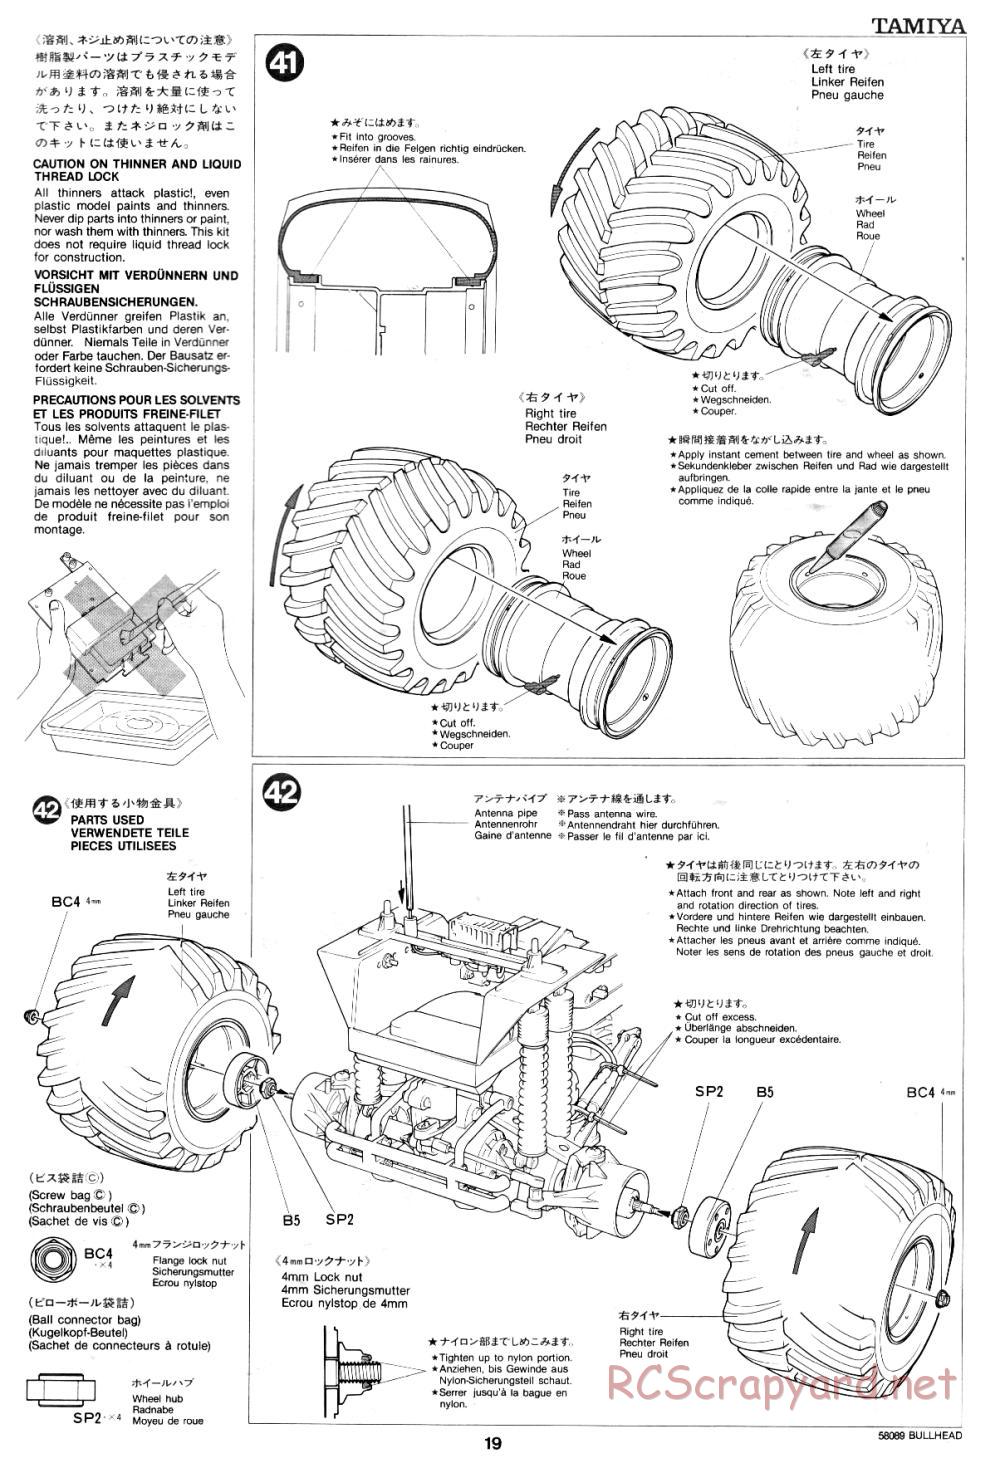 Tamiya - Bullhead - 58089 - Manual - Page 19